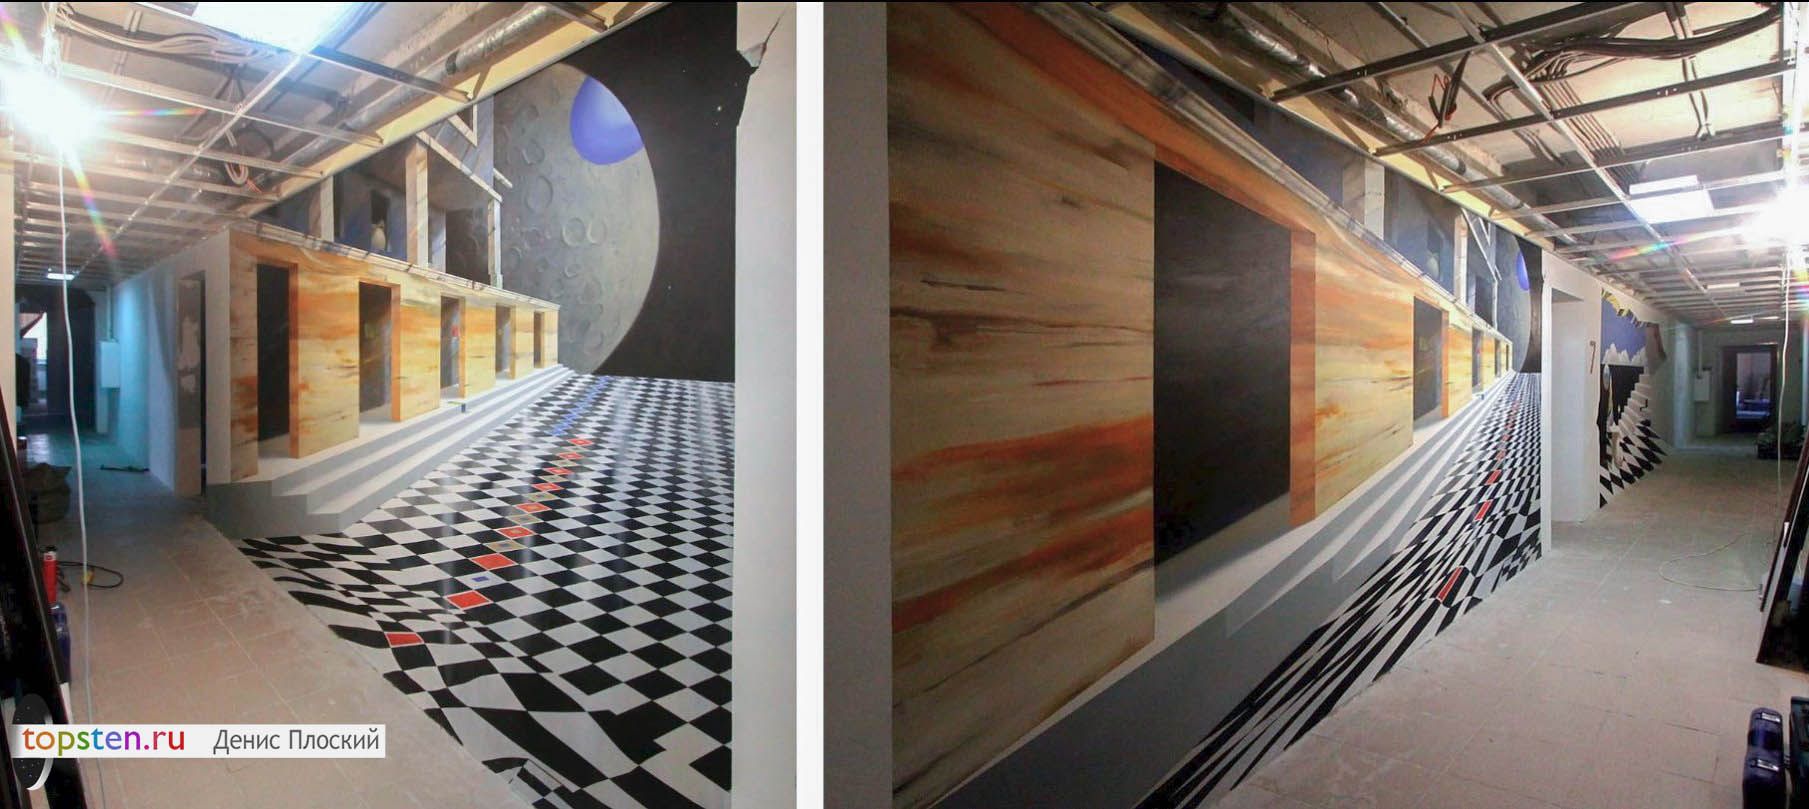 3Д стены в СПб - реалистичная роспись стен с эффектом 3Д 